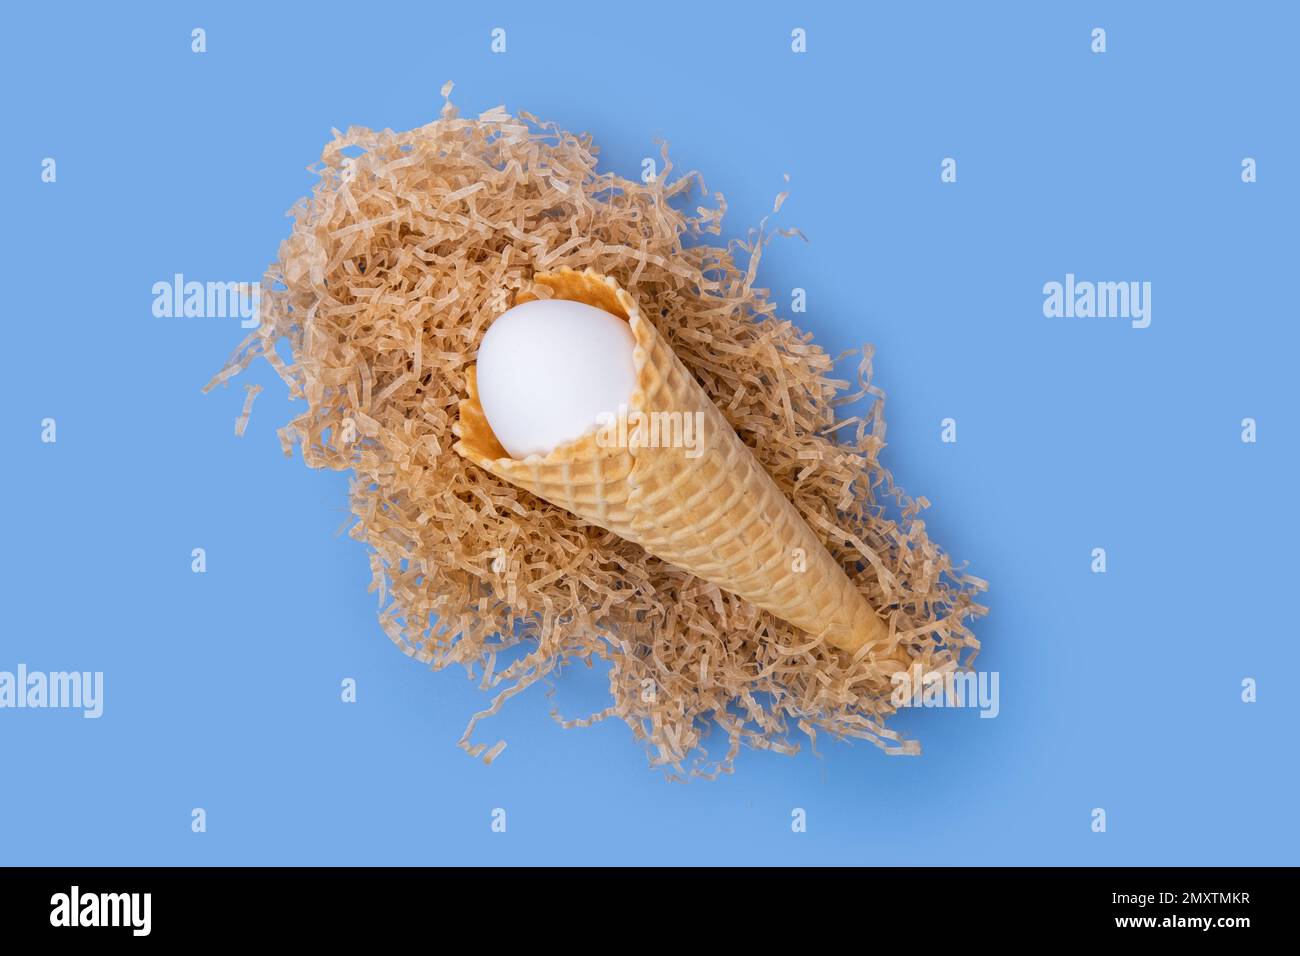 Cornet de crème glacée gaufrée avec un œuf de Pâques blanc caché dans un nid en papier sur fond bleu, concept, minimalisme. Carte de Pâques créative Banque D'Images